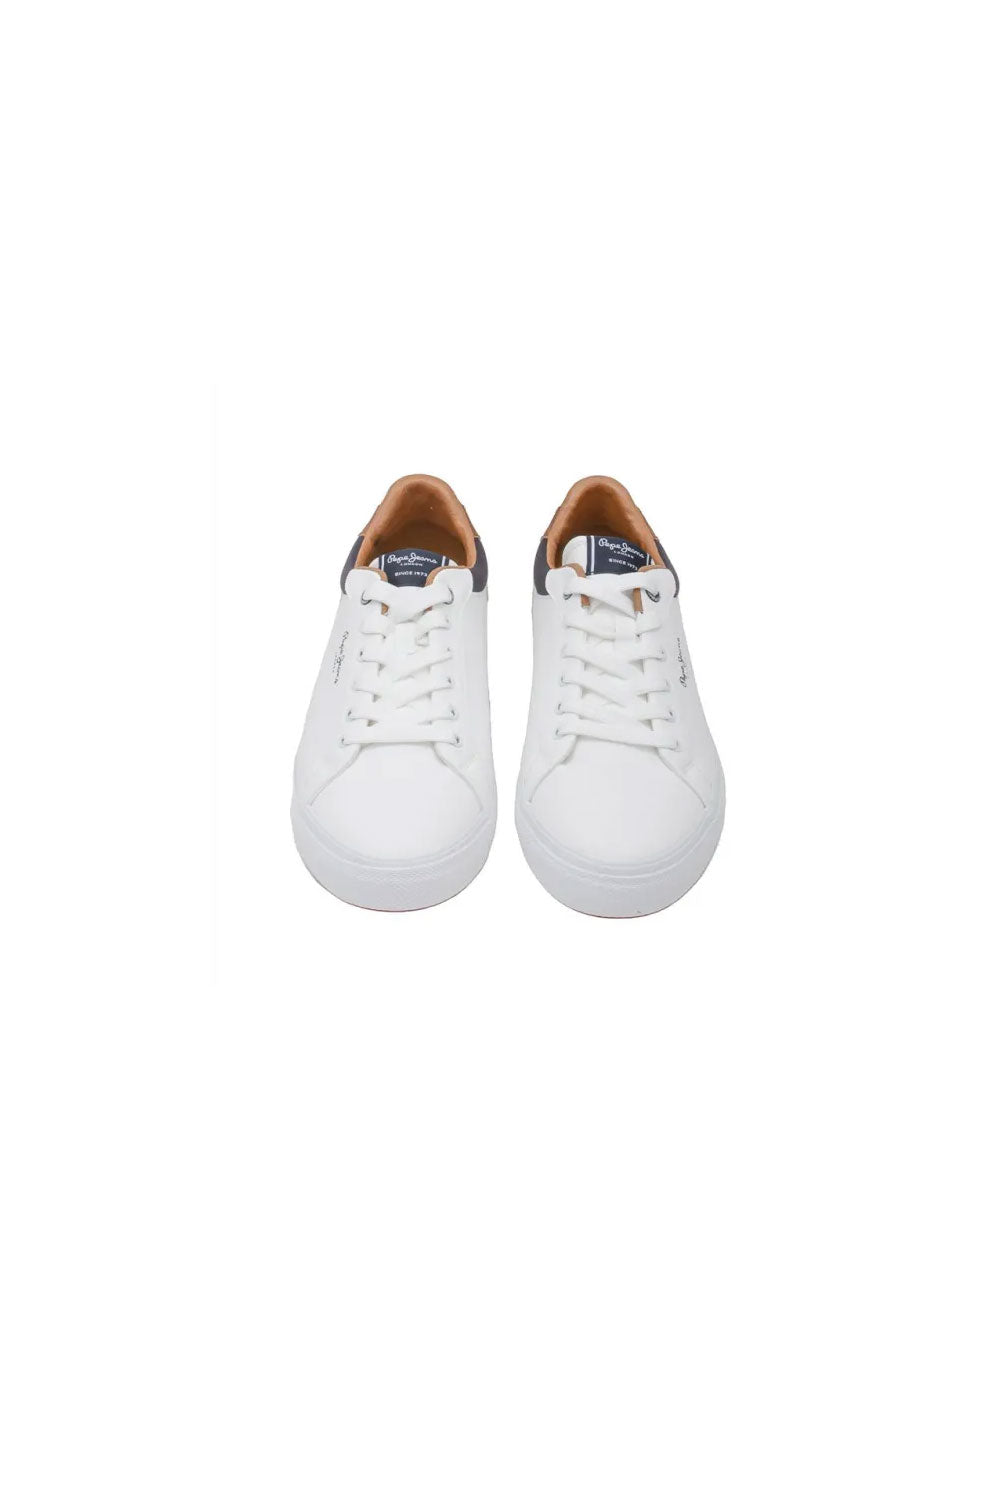 פפה ג׳ינס נעלי סניקרס Kenton Court בצבע לבן לגברים-Pepe Jeans London-40-נאקו